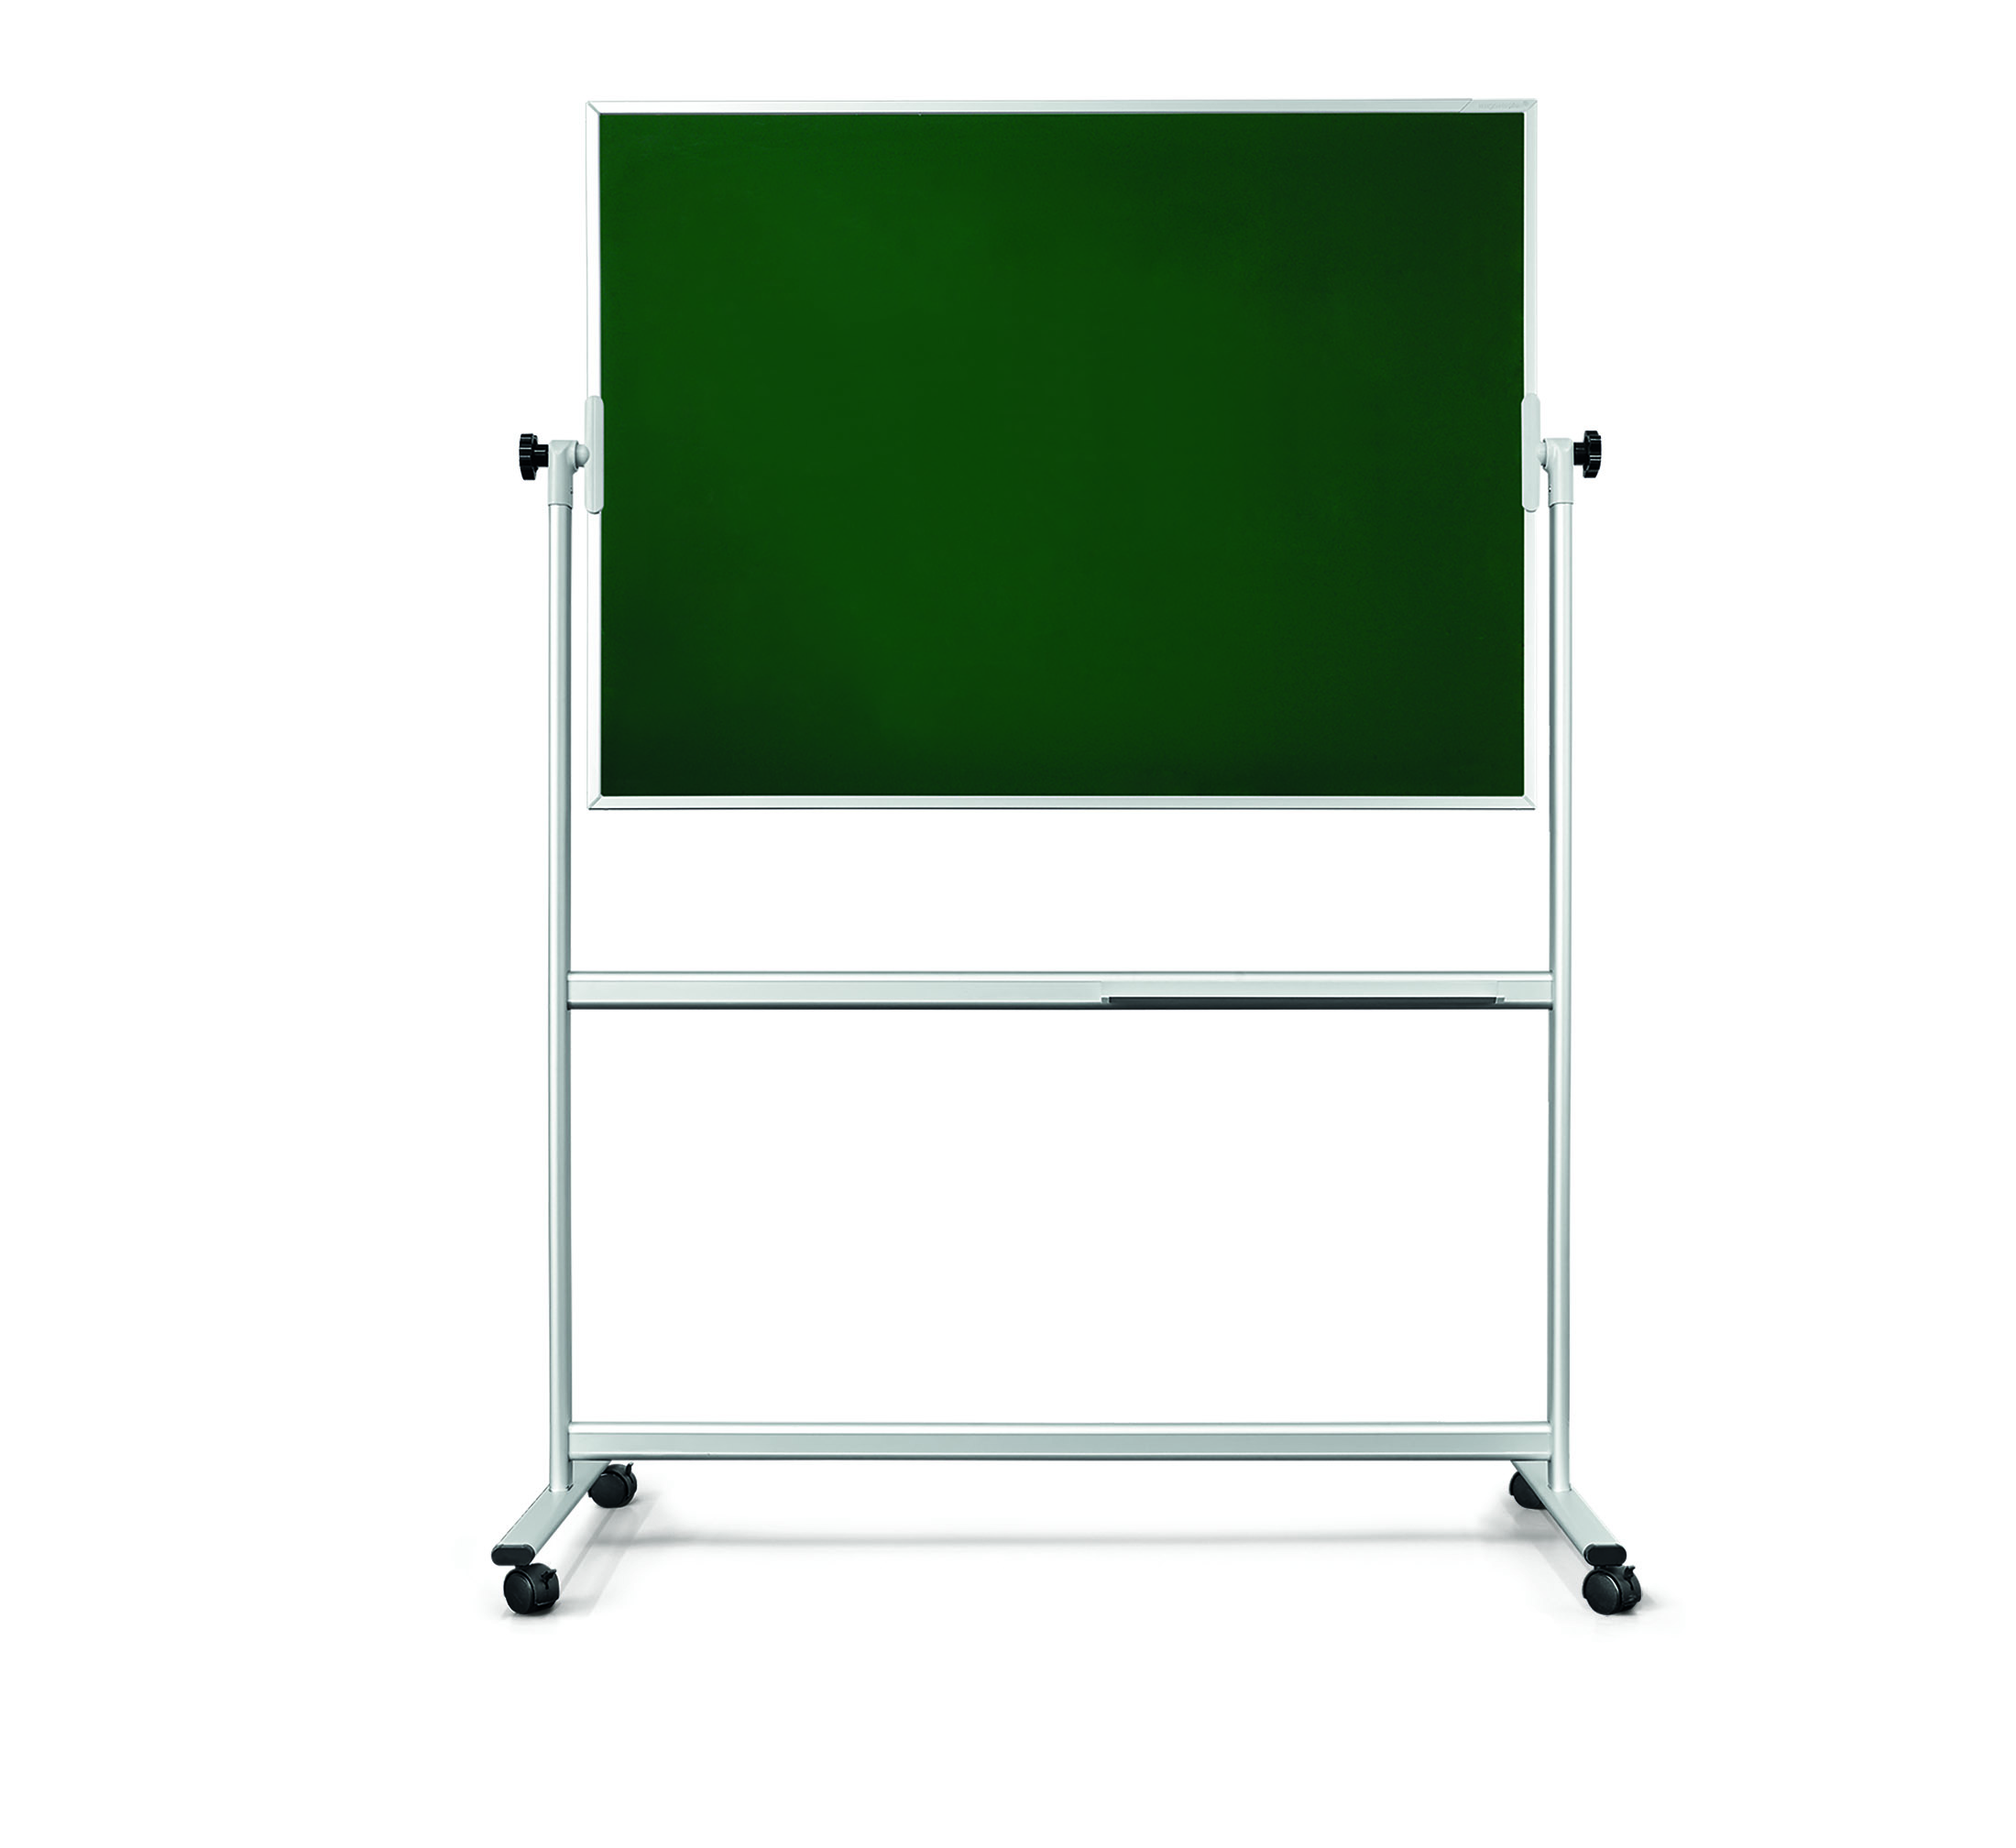 Produktbild einer grünen Design-Kreidetafel